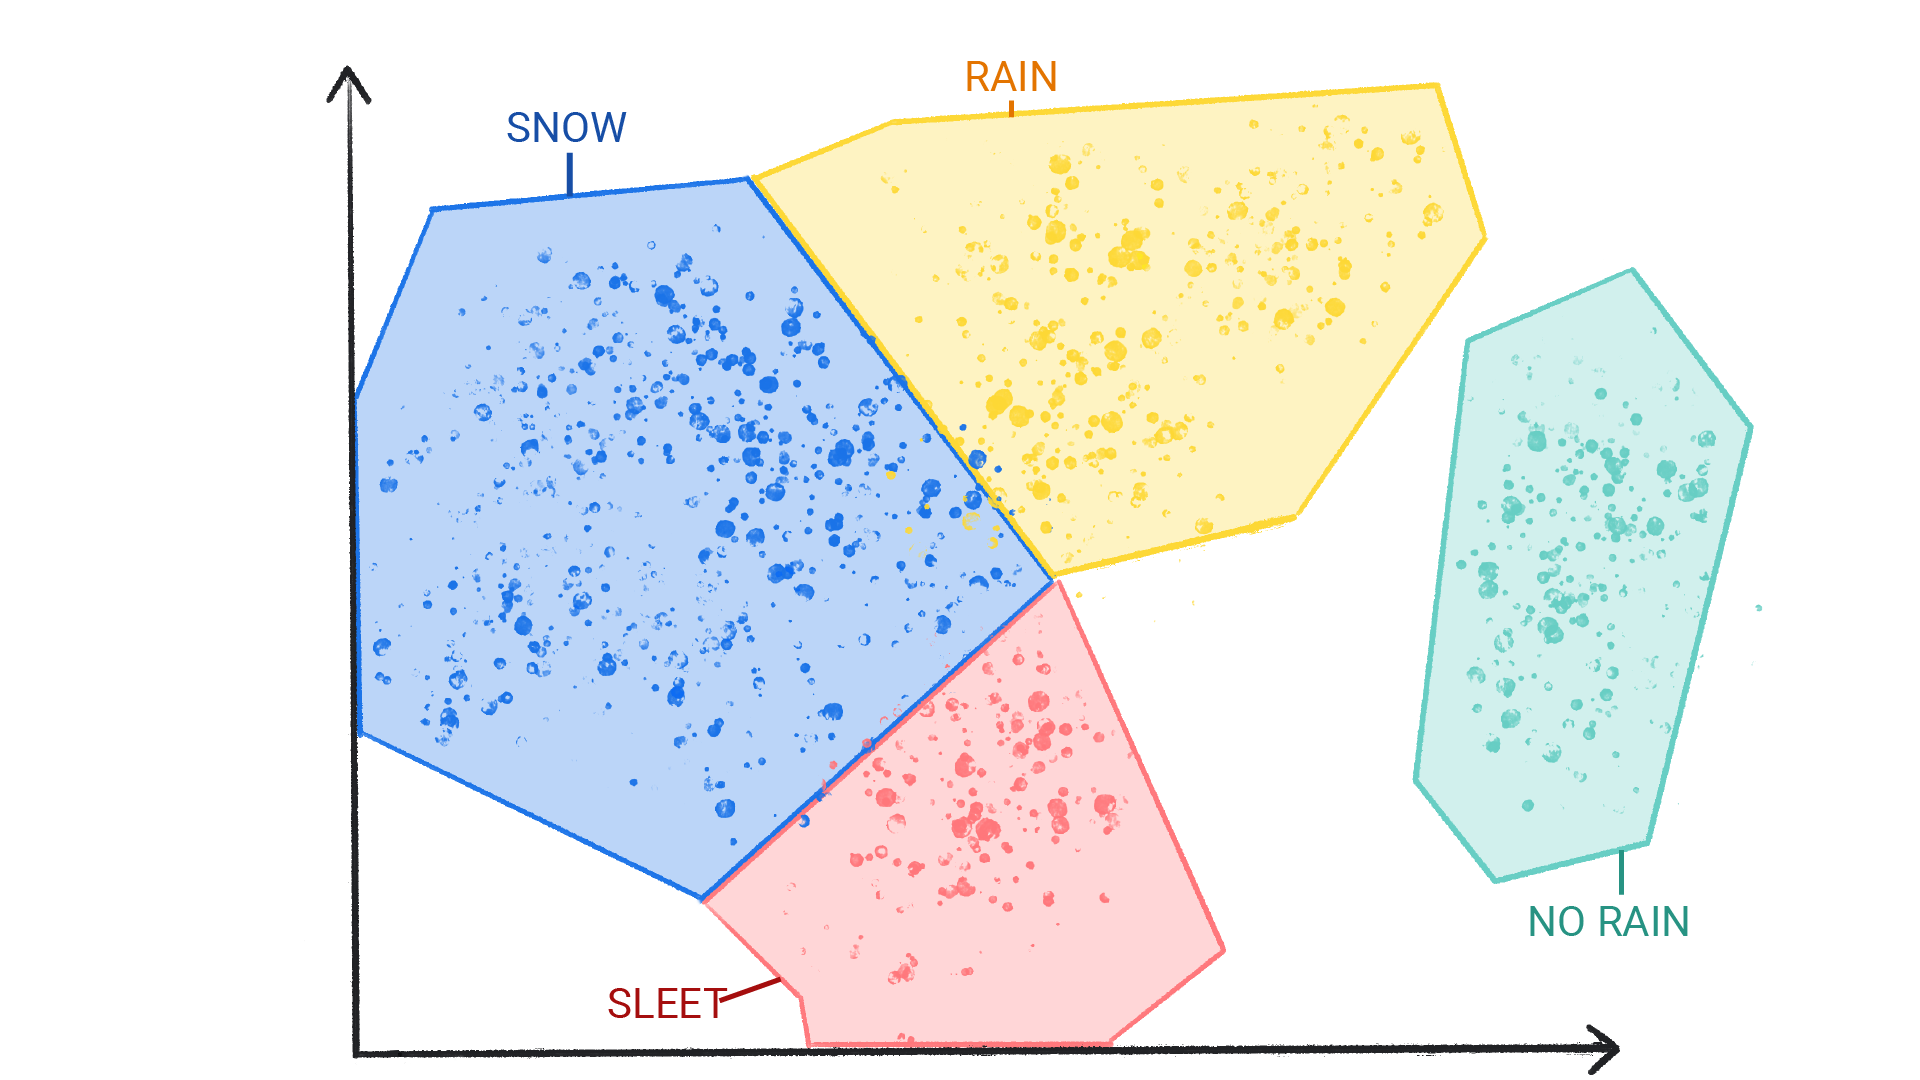 תמונה שמציגה נקודות צבעוניות באשכולות שמסומנים כשלג, גשם, ברד וללא גשם שתחומים בצורות שונות וגבול ביניהם.